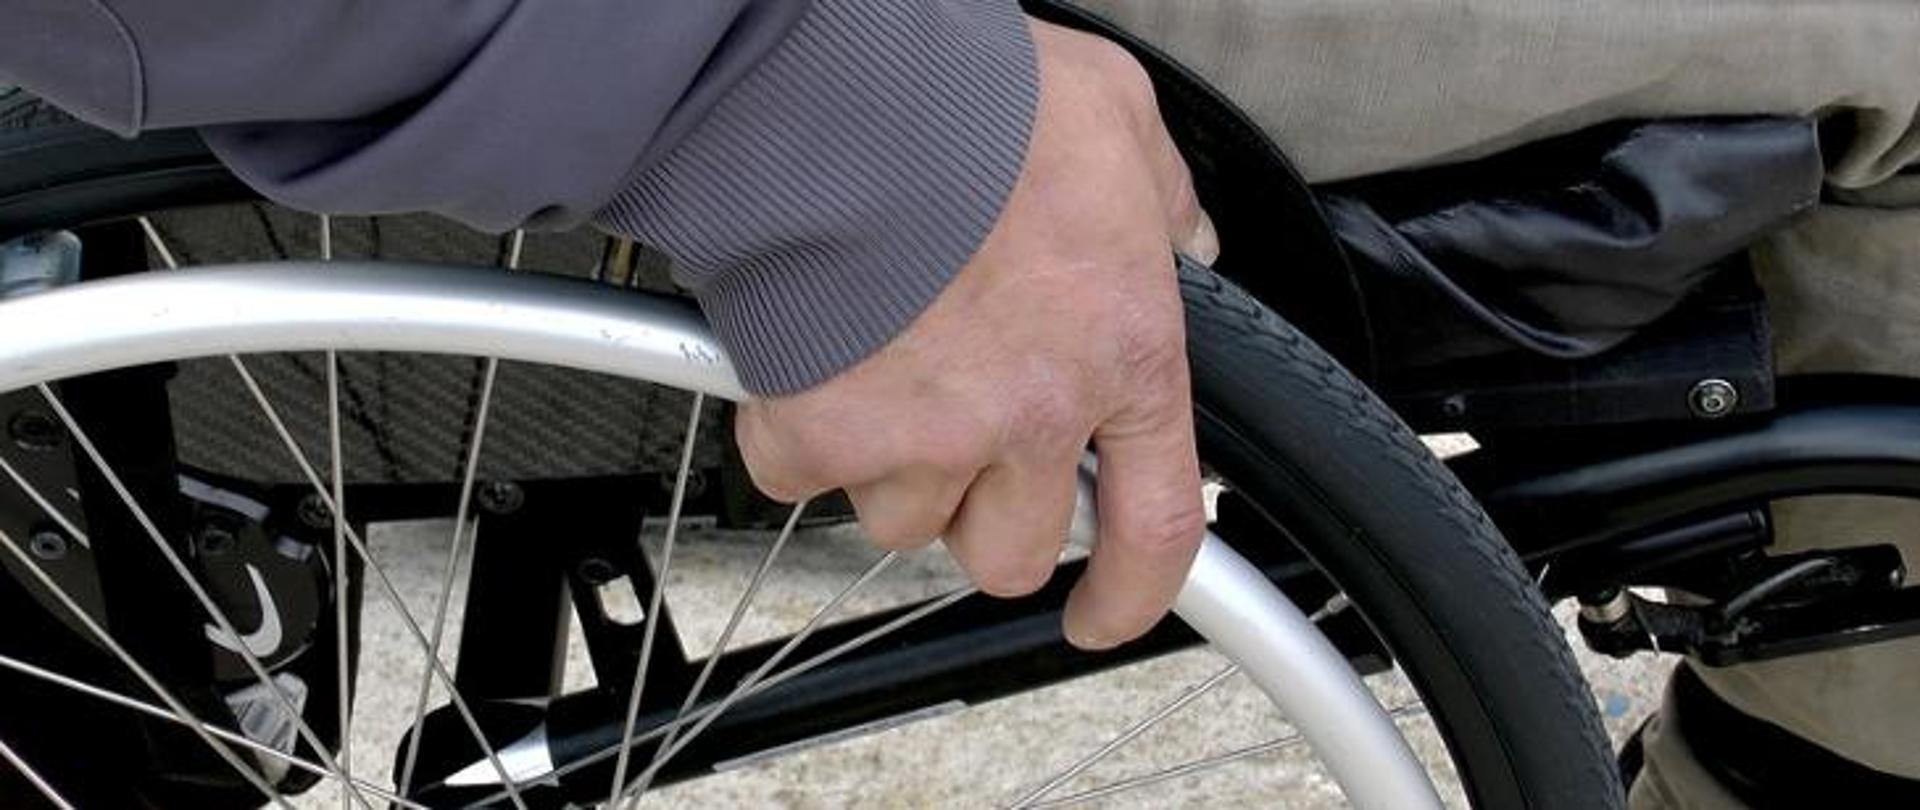 Osoba na wózku inwalidzkim 